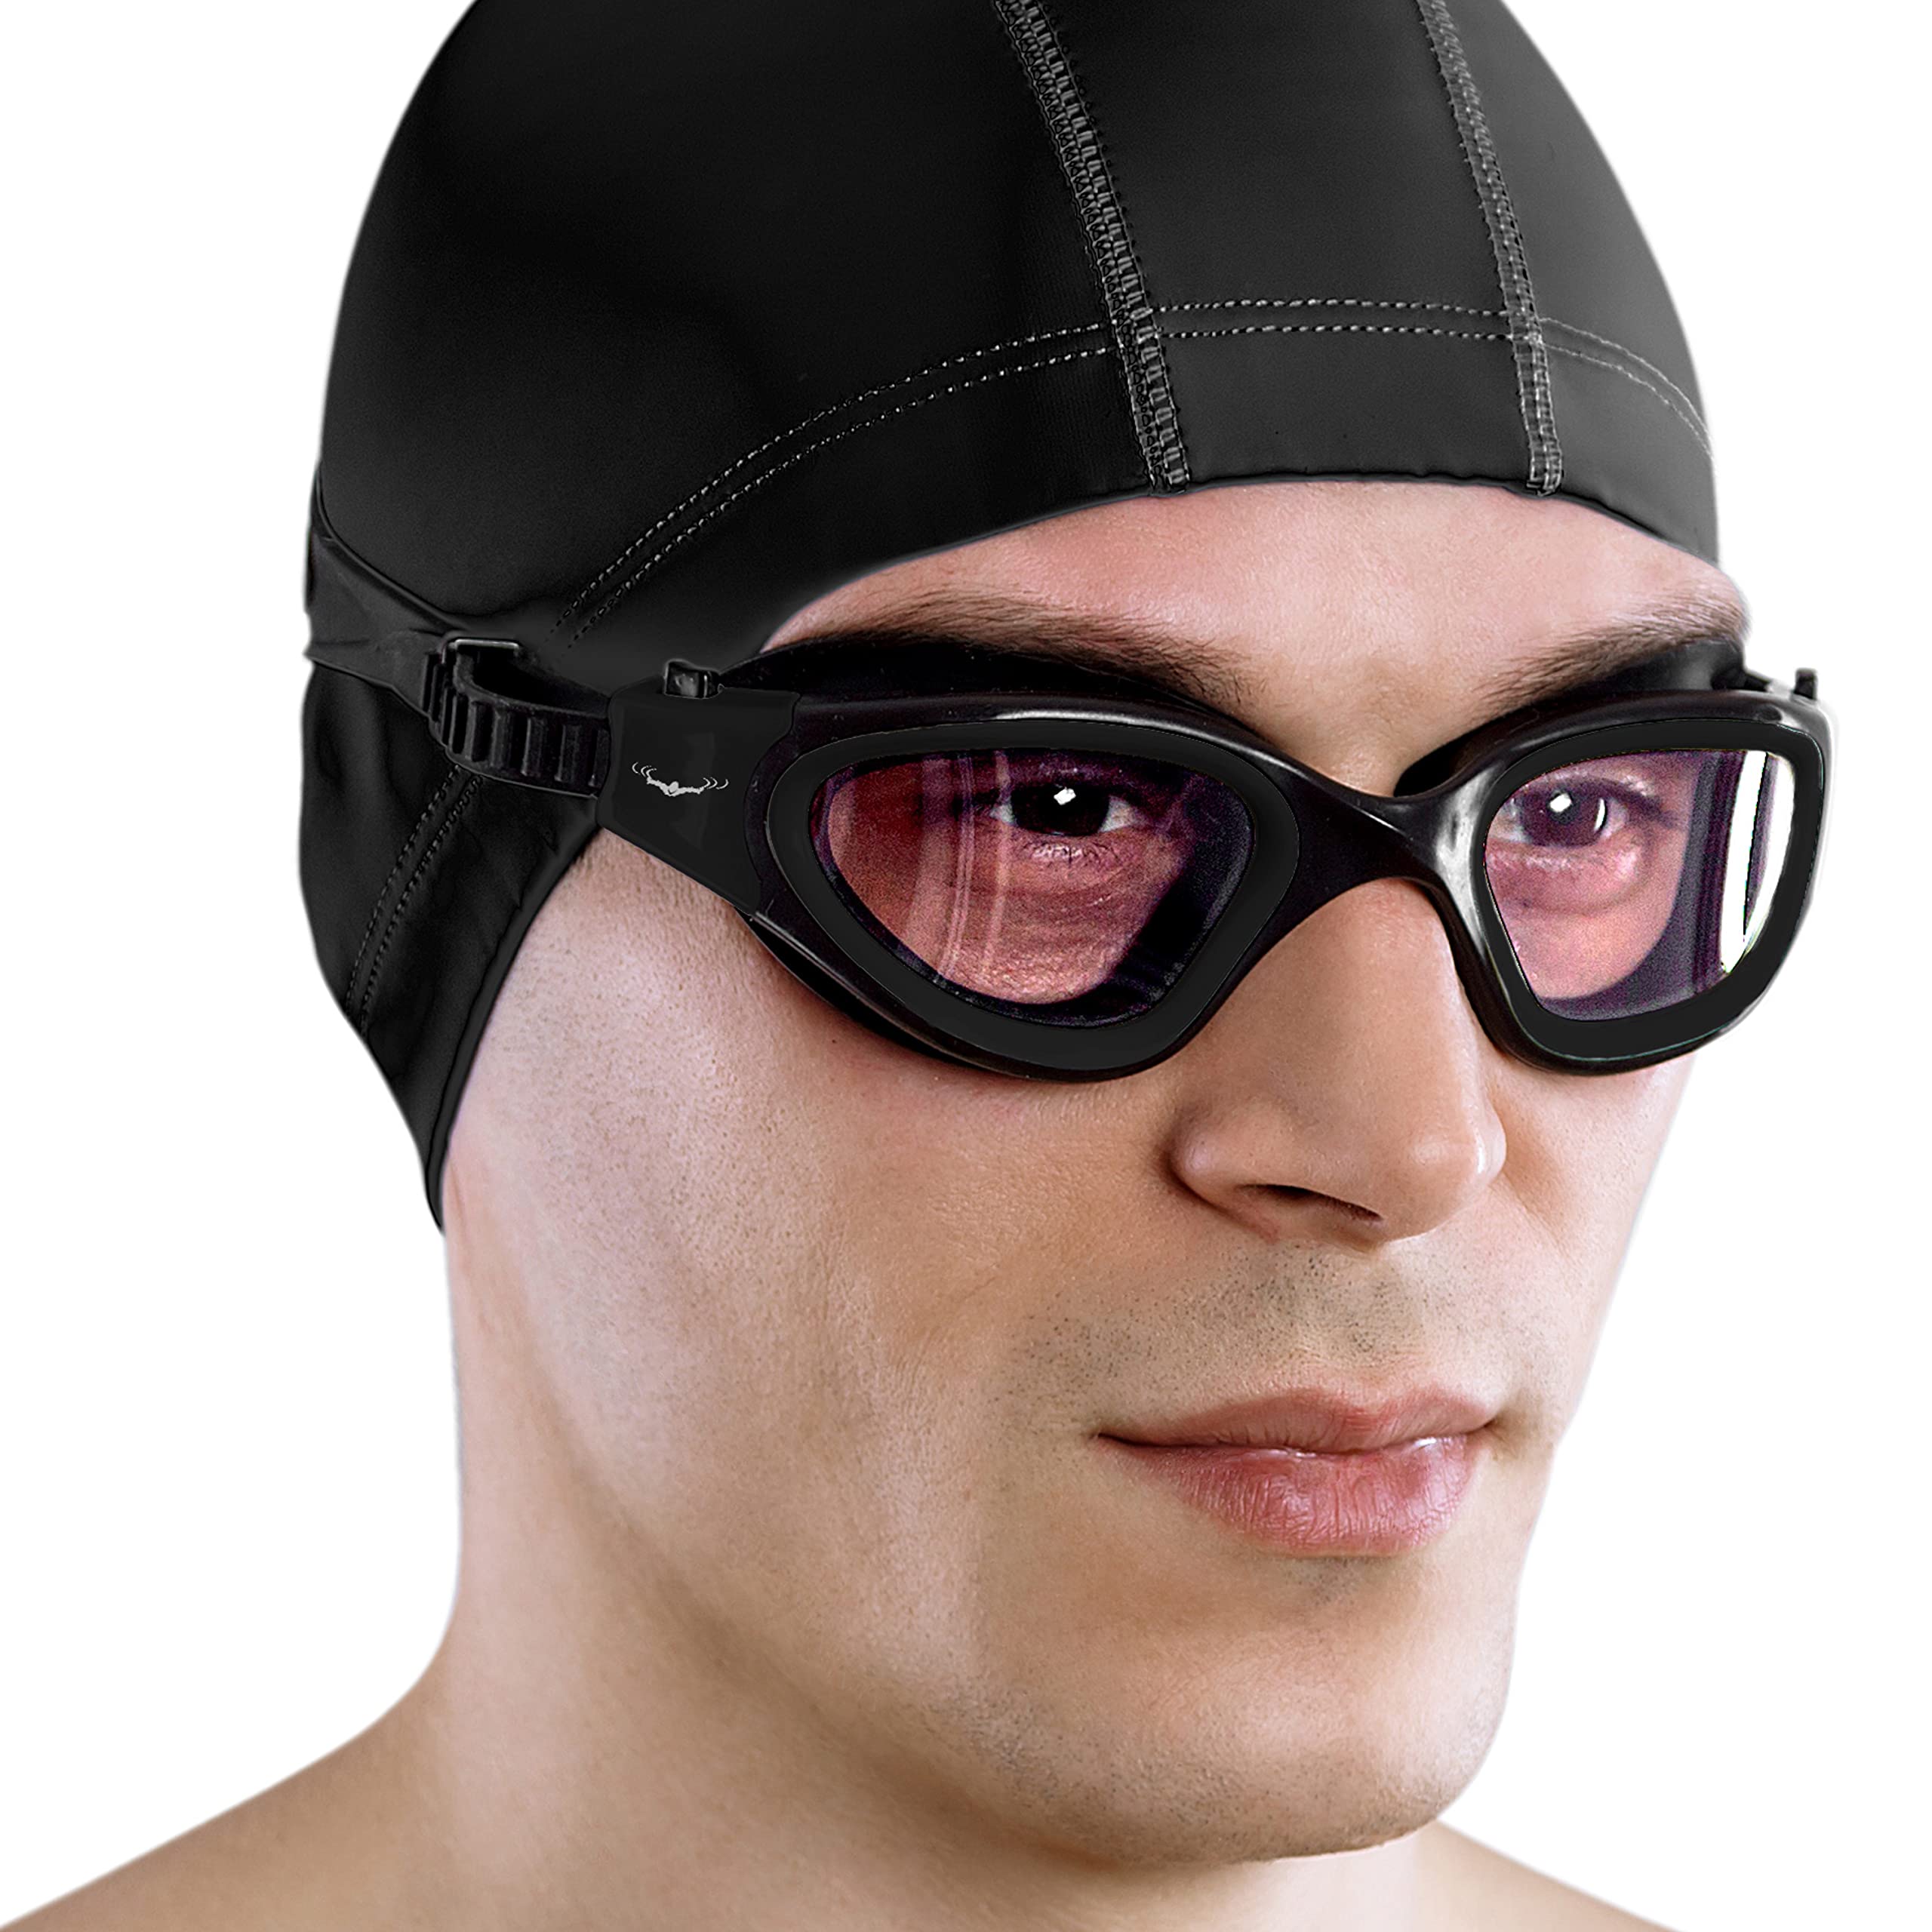 AqtivAqua Swimming Goggles